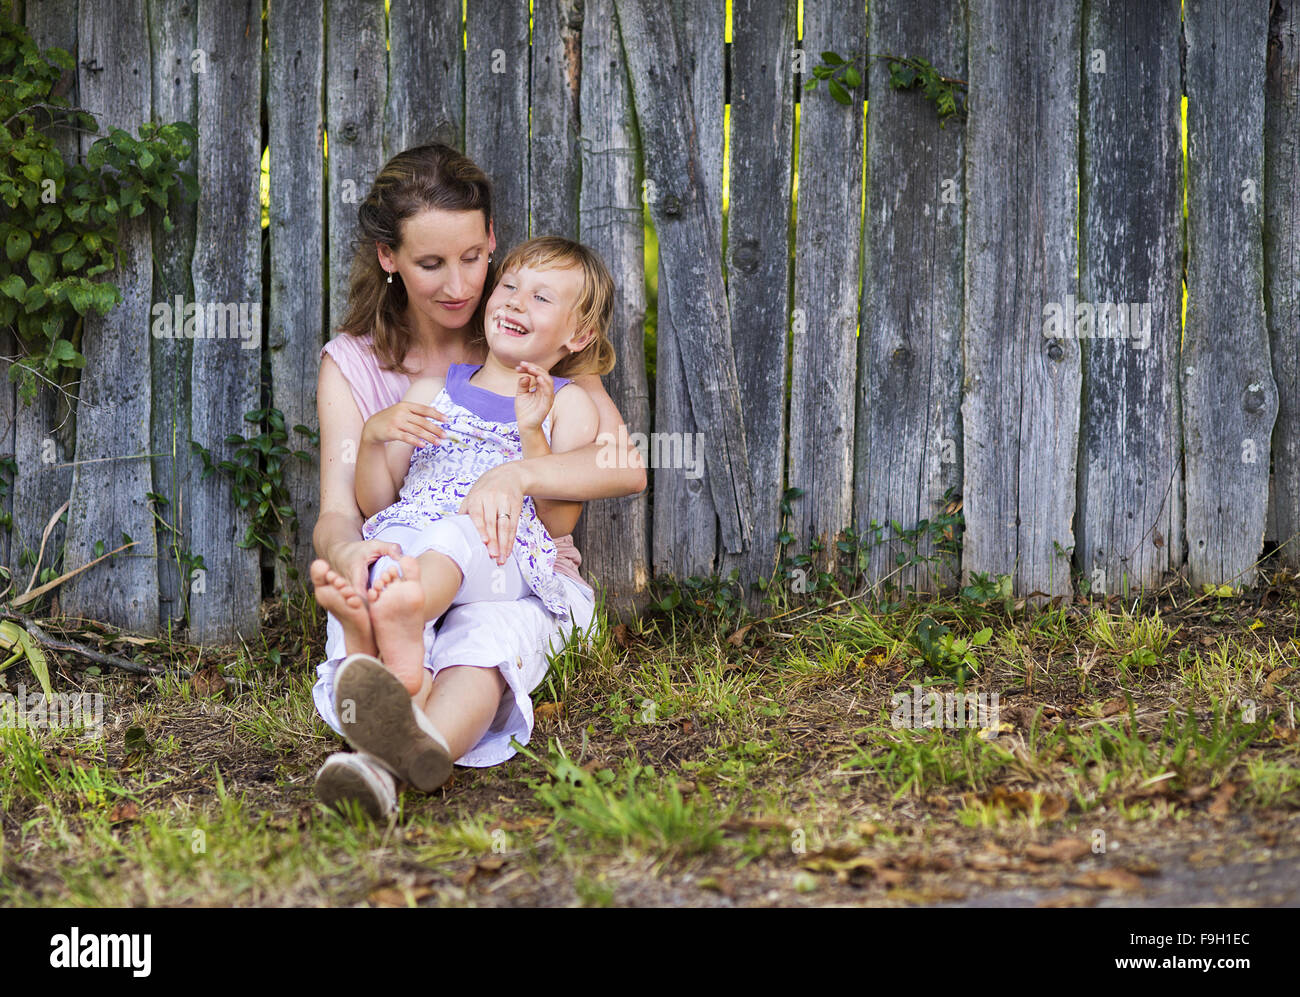 Glückliche Mutter mit ihrer Tochter verbringen Zeit zusammen draußen in der grünen Natur. Stockfoto